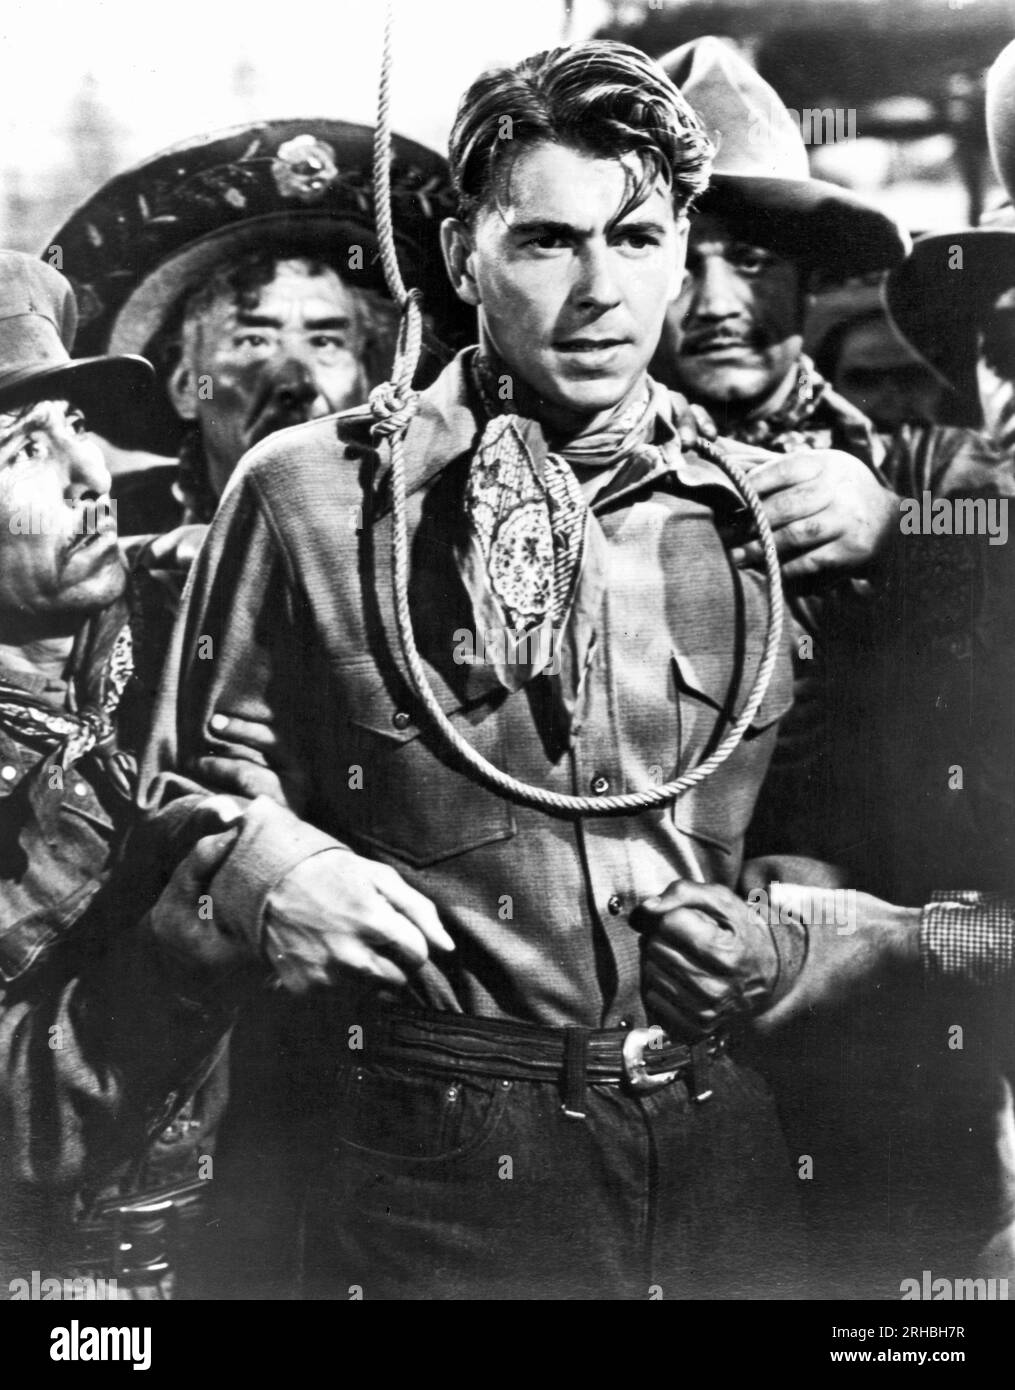 Hollywood, Kalifornien: c. 1941-Schauspieler Ronald Reagan in einer Szene aus dem Western-Film „der böse Mann“. Stockfoto